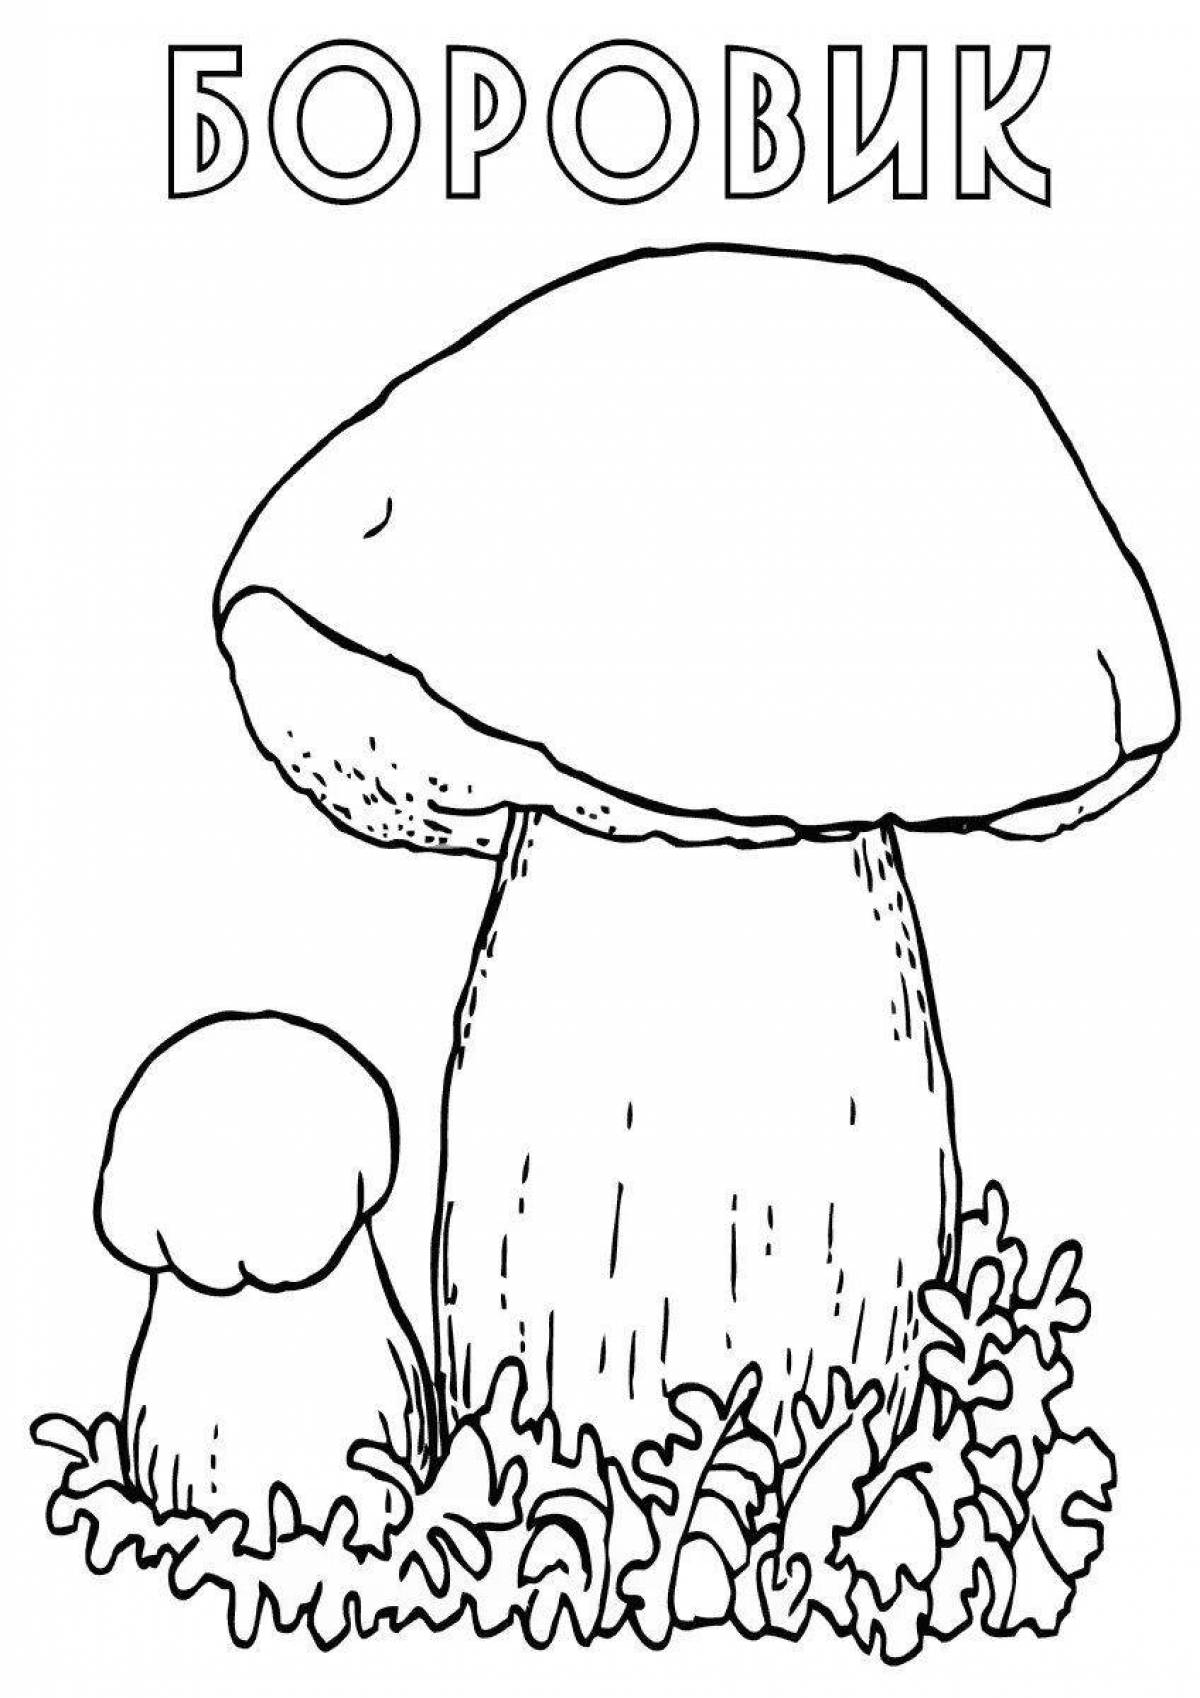 Magic porcini mushroom coloring book